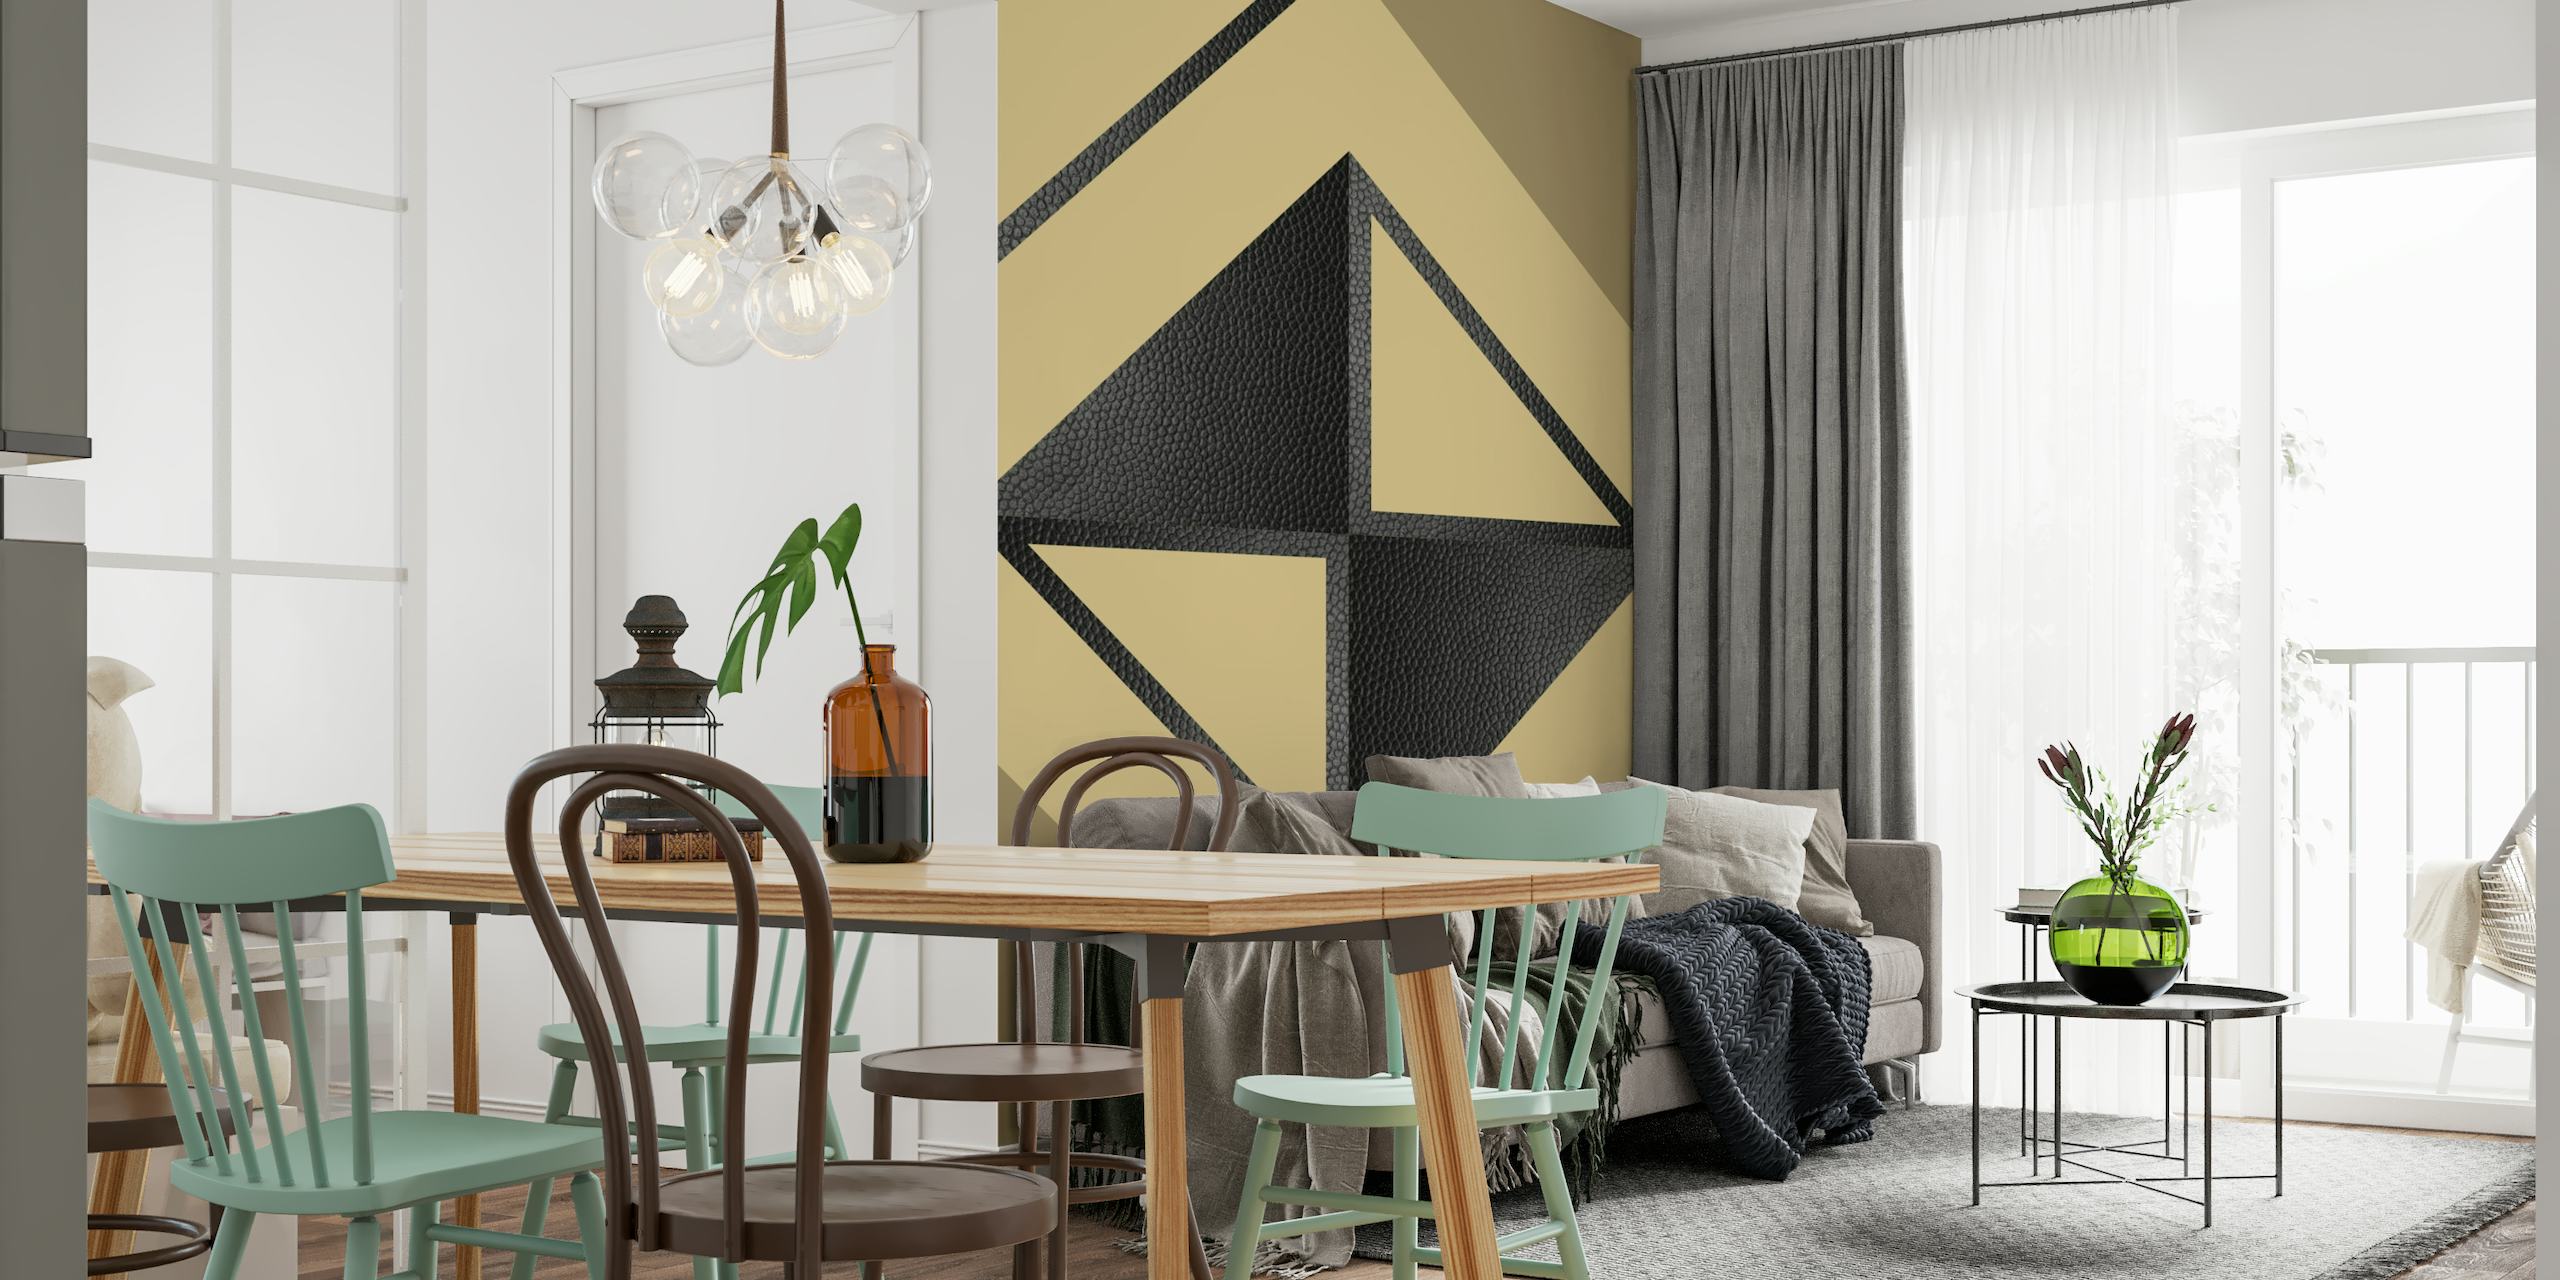 Mural de pared geométrico abstracto en amarillo y negro con triángulos y formas minimalistas